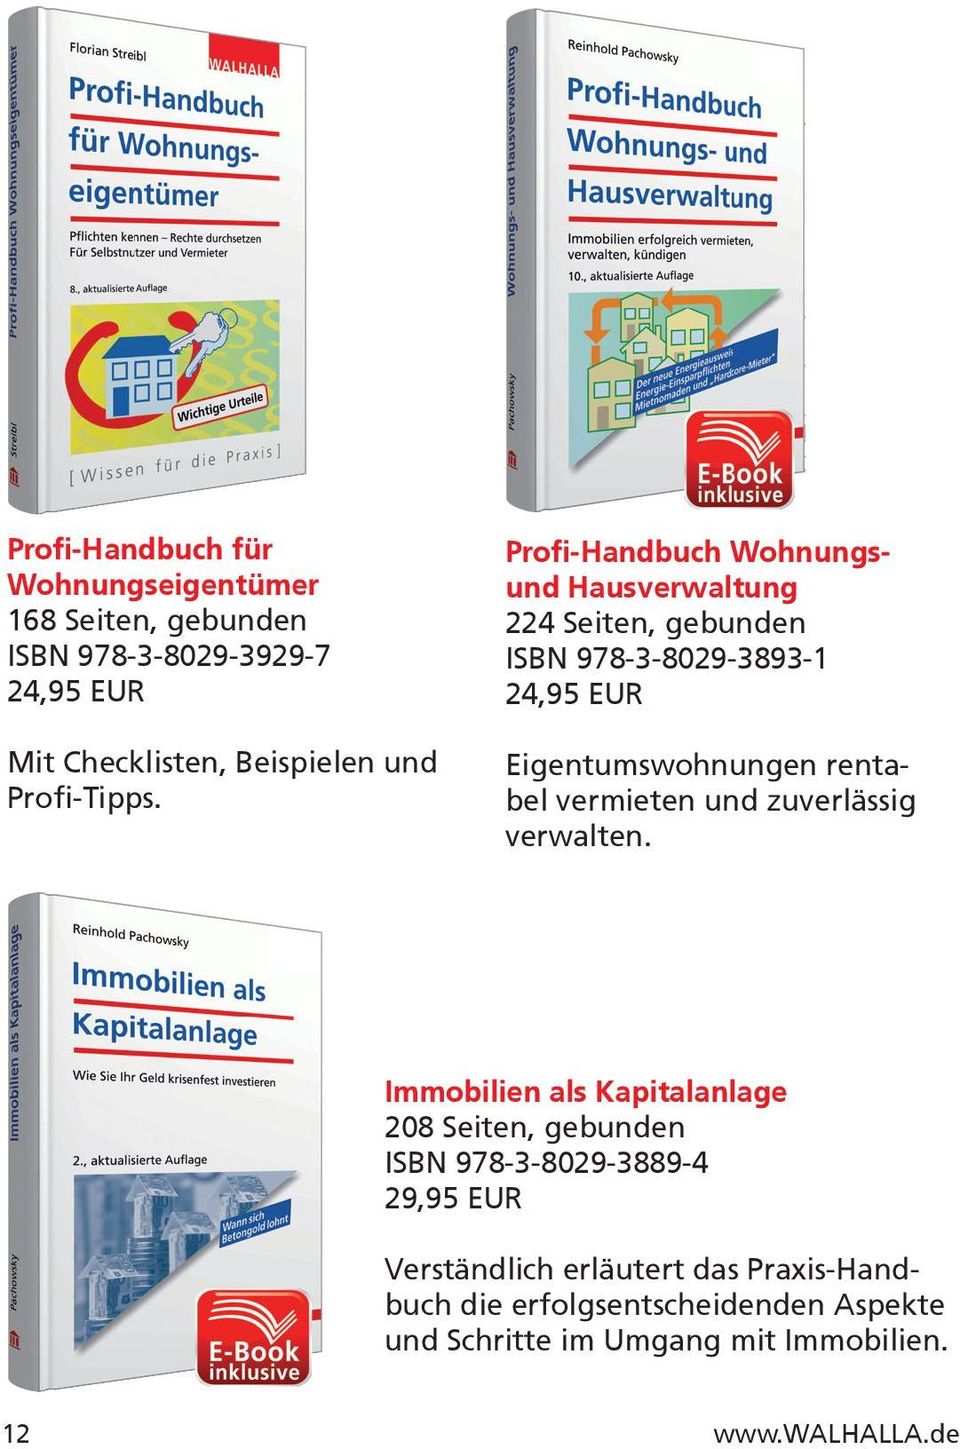 Profi-Handbuch Wohnungsund Hausverwaltung 224 Seiten, gebunden ISBN 978-3-8029-3893-1 24,95 EUR Eigentumswohnungen